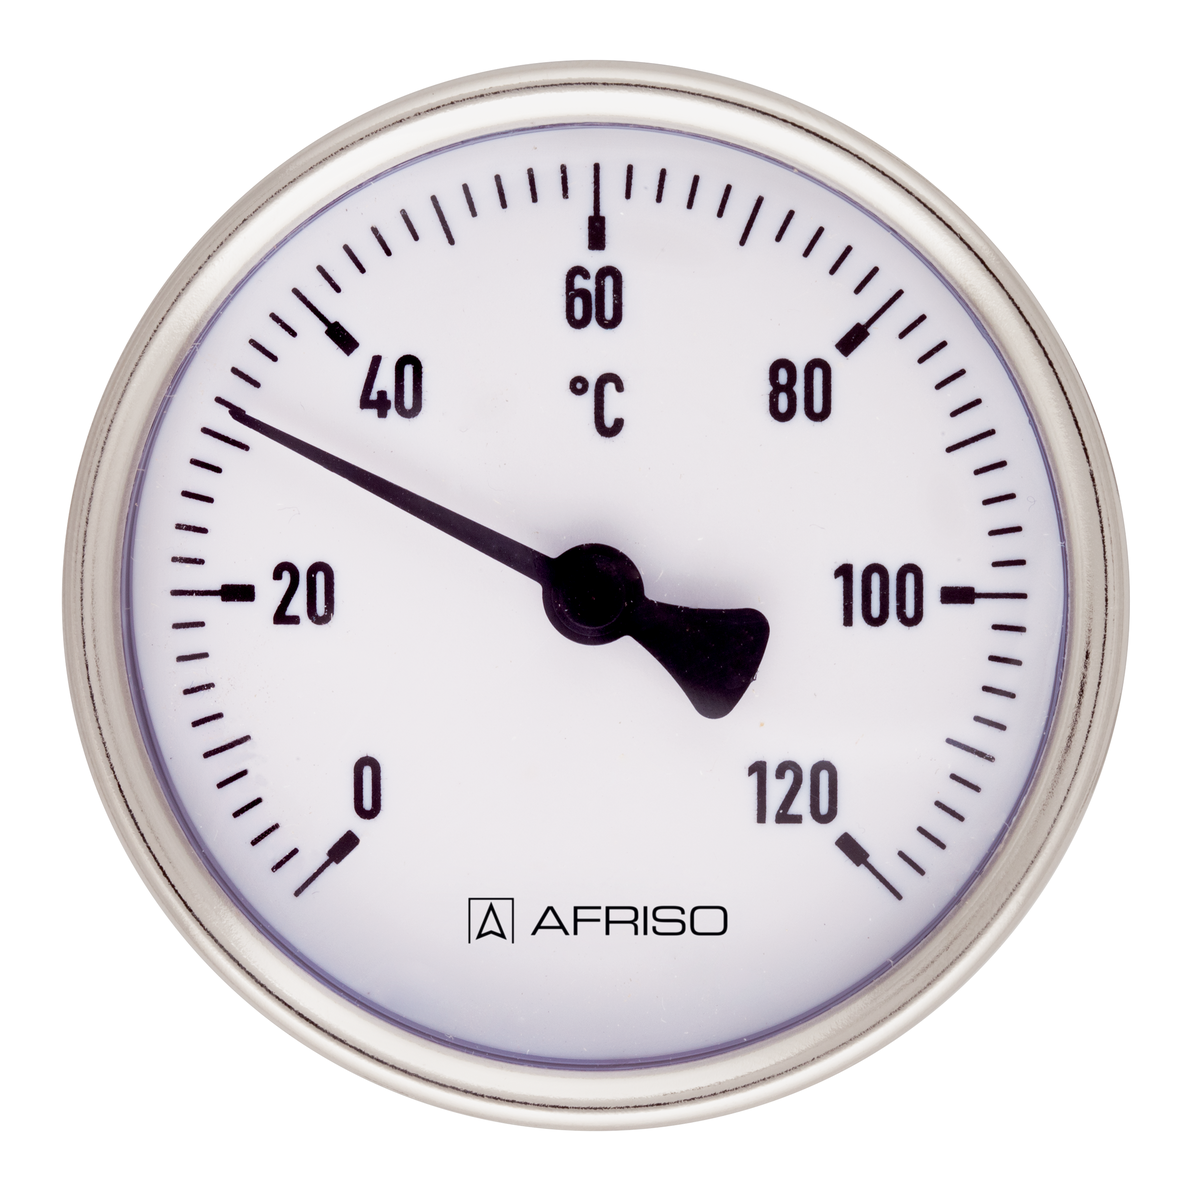 Bimetalový teploměr BiTh 50 ST, Ø 50 mm, 0 ÷ 60 °C, délka jímky 63 mm, G½", axiální - AFRISO.CZ